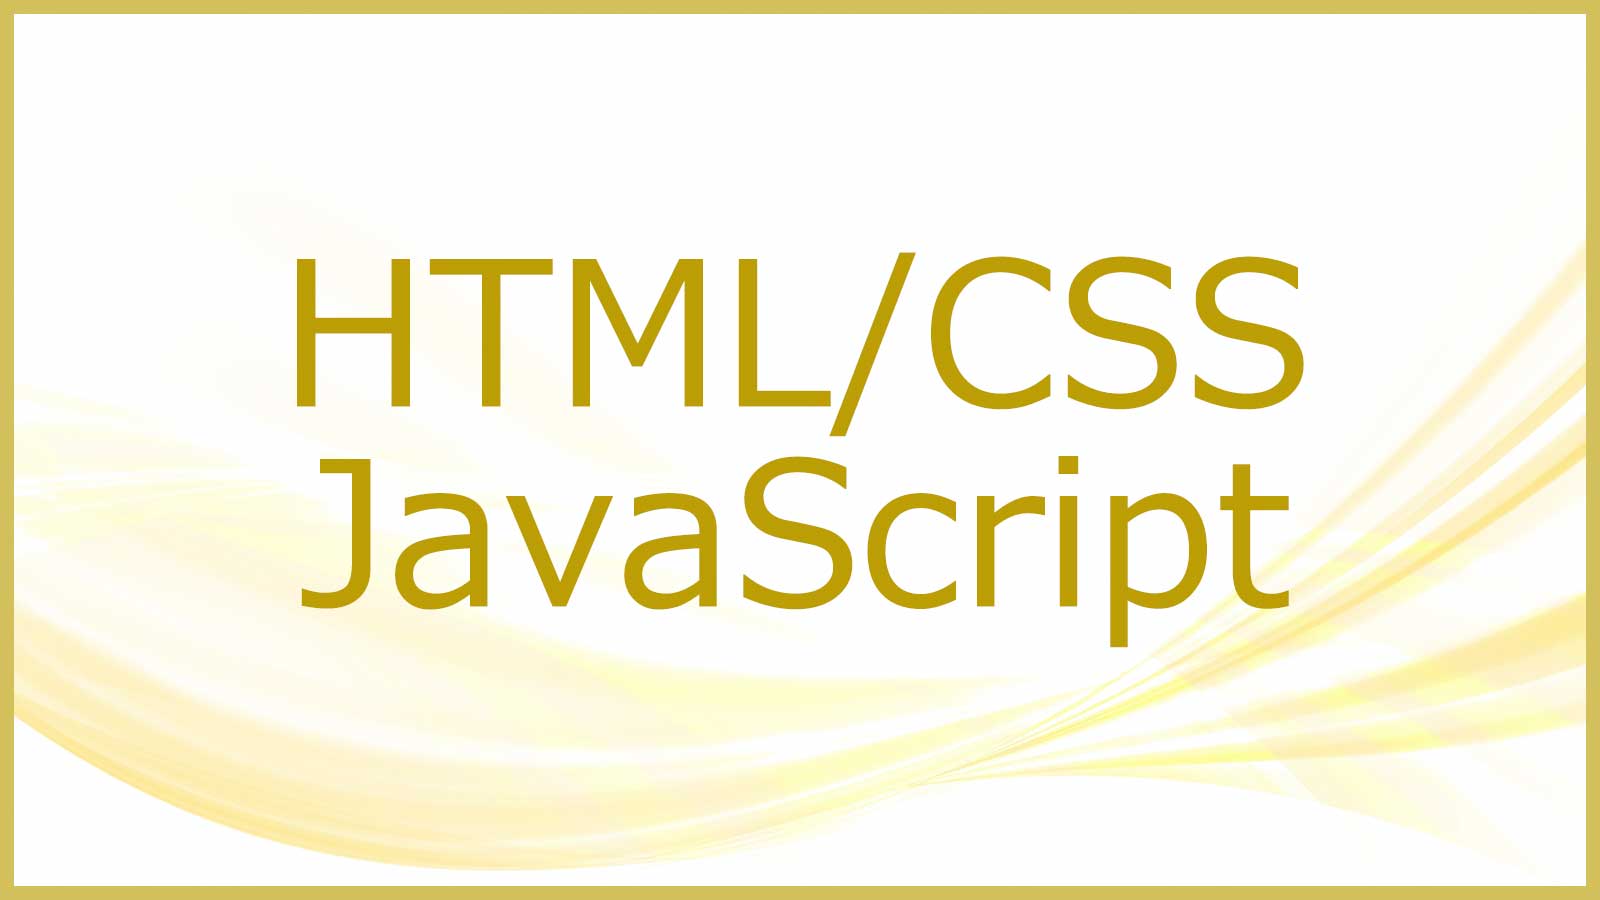 HTML/CSS/JavaScriptについて